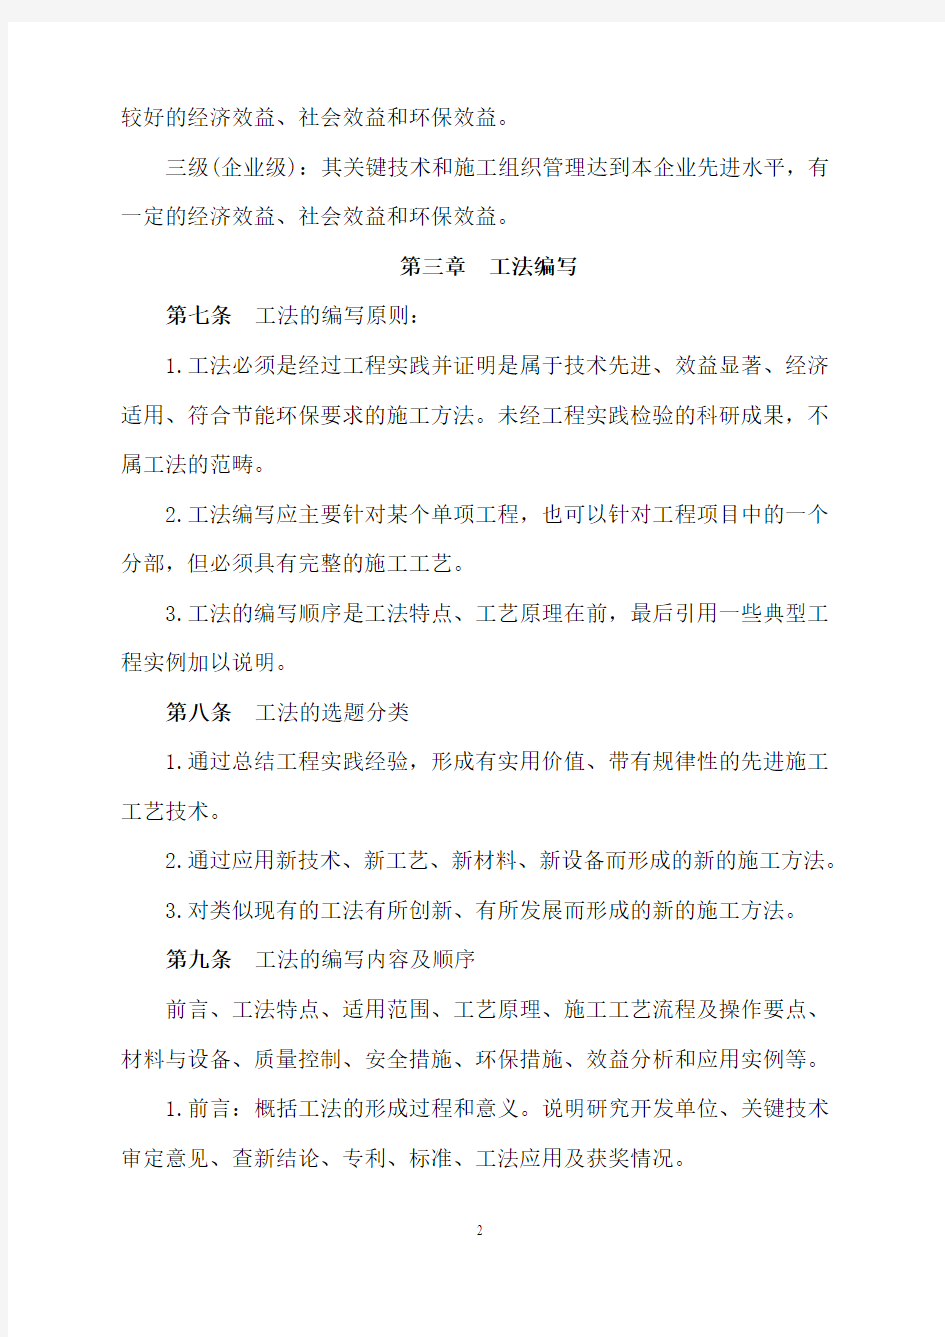 中国铁道建筑总公司工法管理办法201190号文